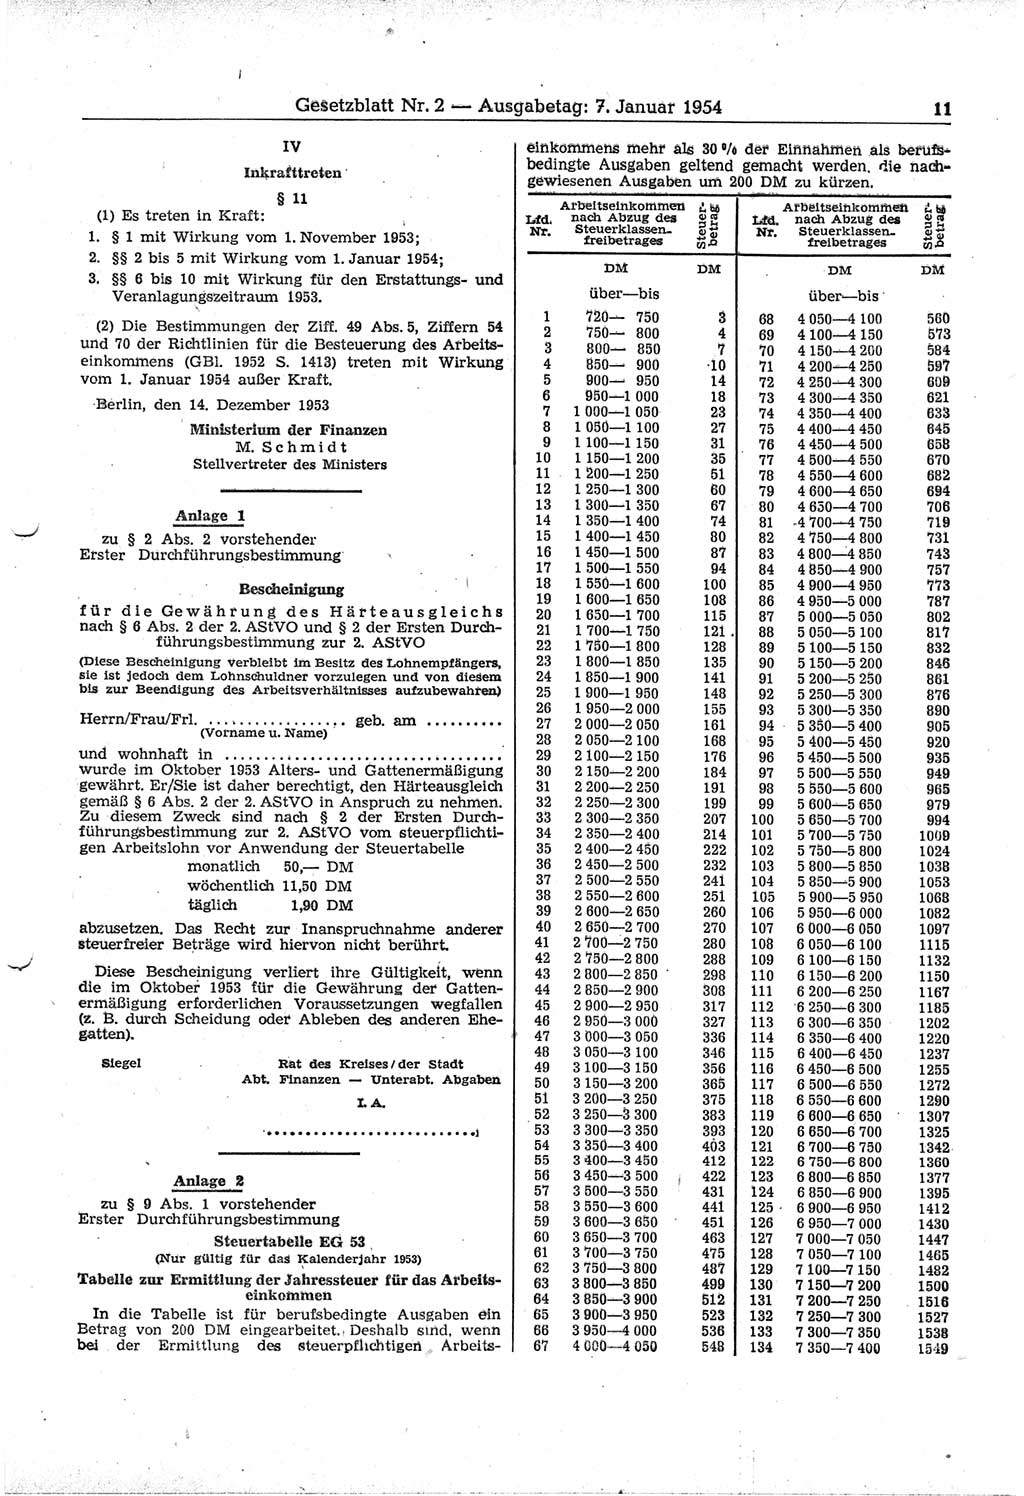 Gesetzblatt (GBl.) der Deutschen Demokratischen Republik (DDR) 1954, Seite 11 (GBl. DDR 1954, S. 11)